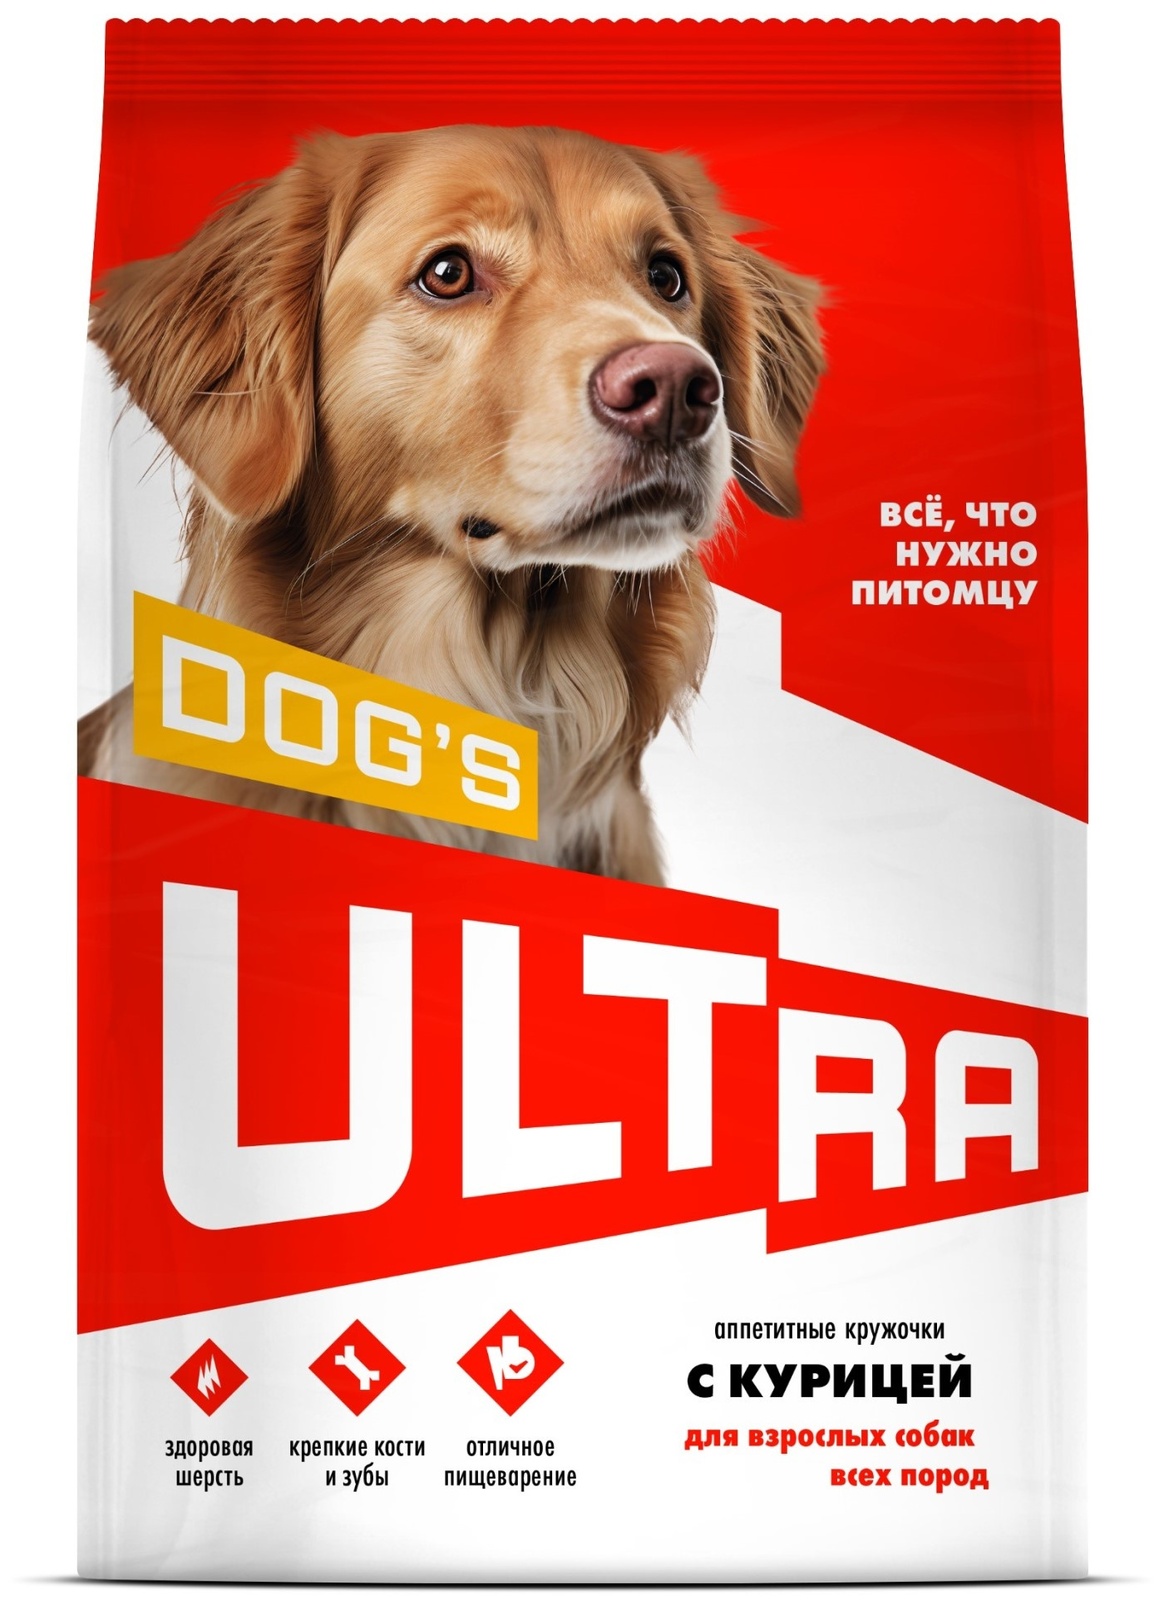 ULTRA ULTRA аппетитные кружочки с курицей для взрослых собак всех пород (600 г) ultra ultra аппетитные кружочки с курицей для взрослых собак всех пород 600 г